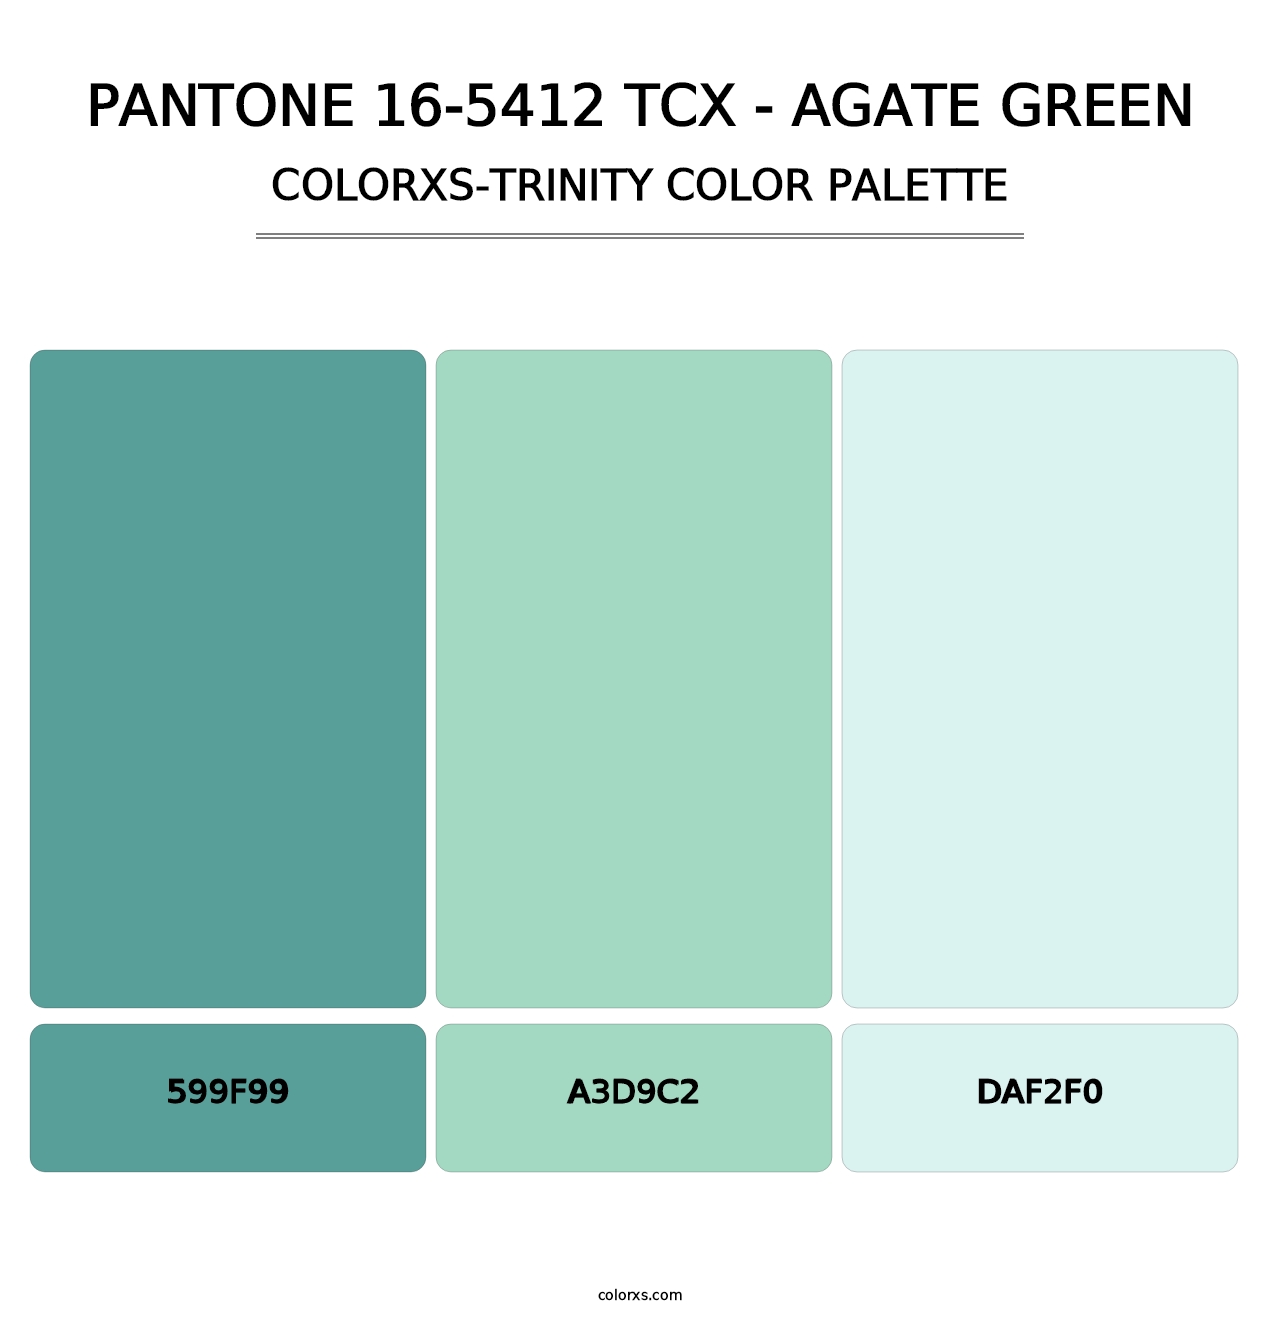 PANTONE 16-5412 TCX - Agate Green - Colorxs Trinity Palette